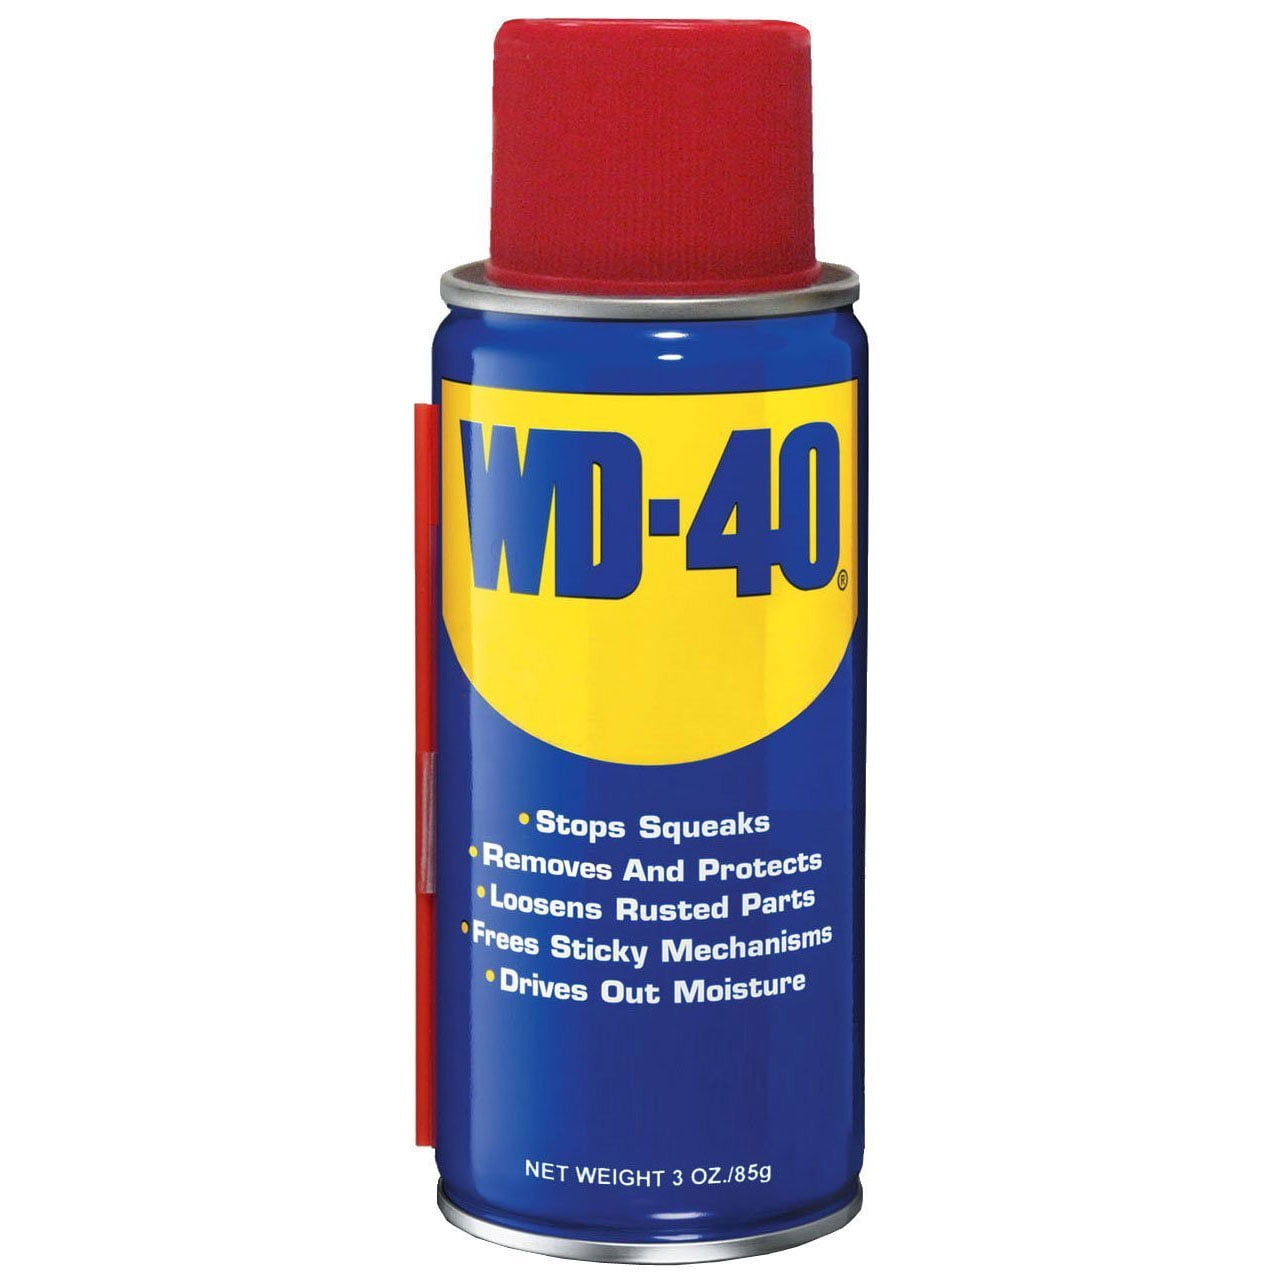 Вд вода. WD 40. Очиститель WD-40 100 мл. Универсальная смазка WD-40, 100 мл.. Wd0000 WD-40 универсальная смазка - аэрозоль (100 мл).